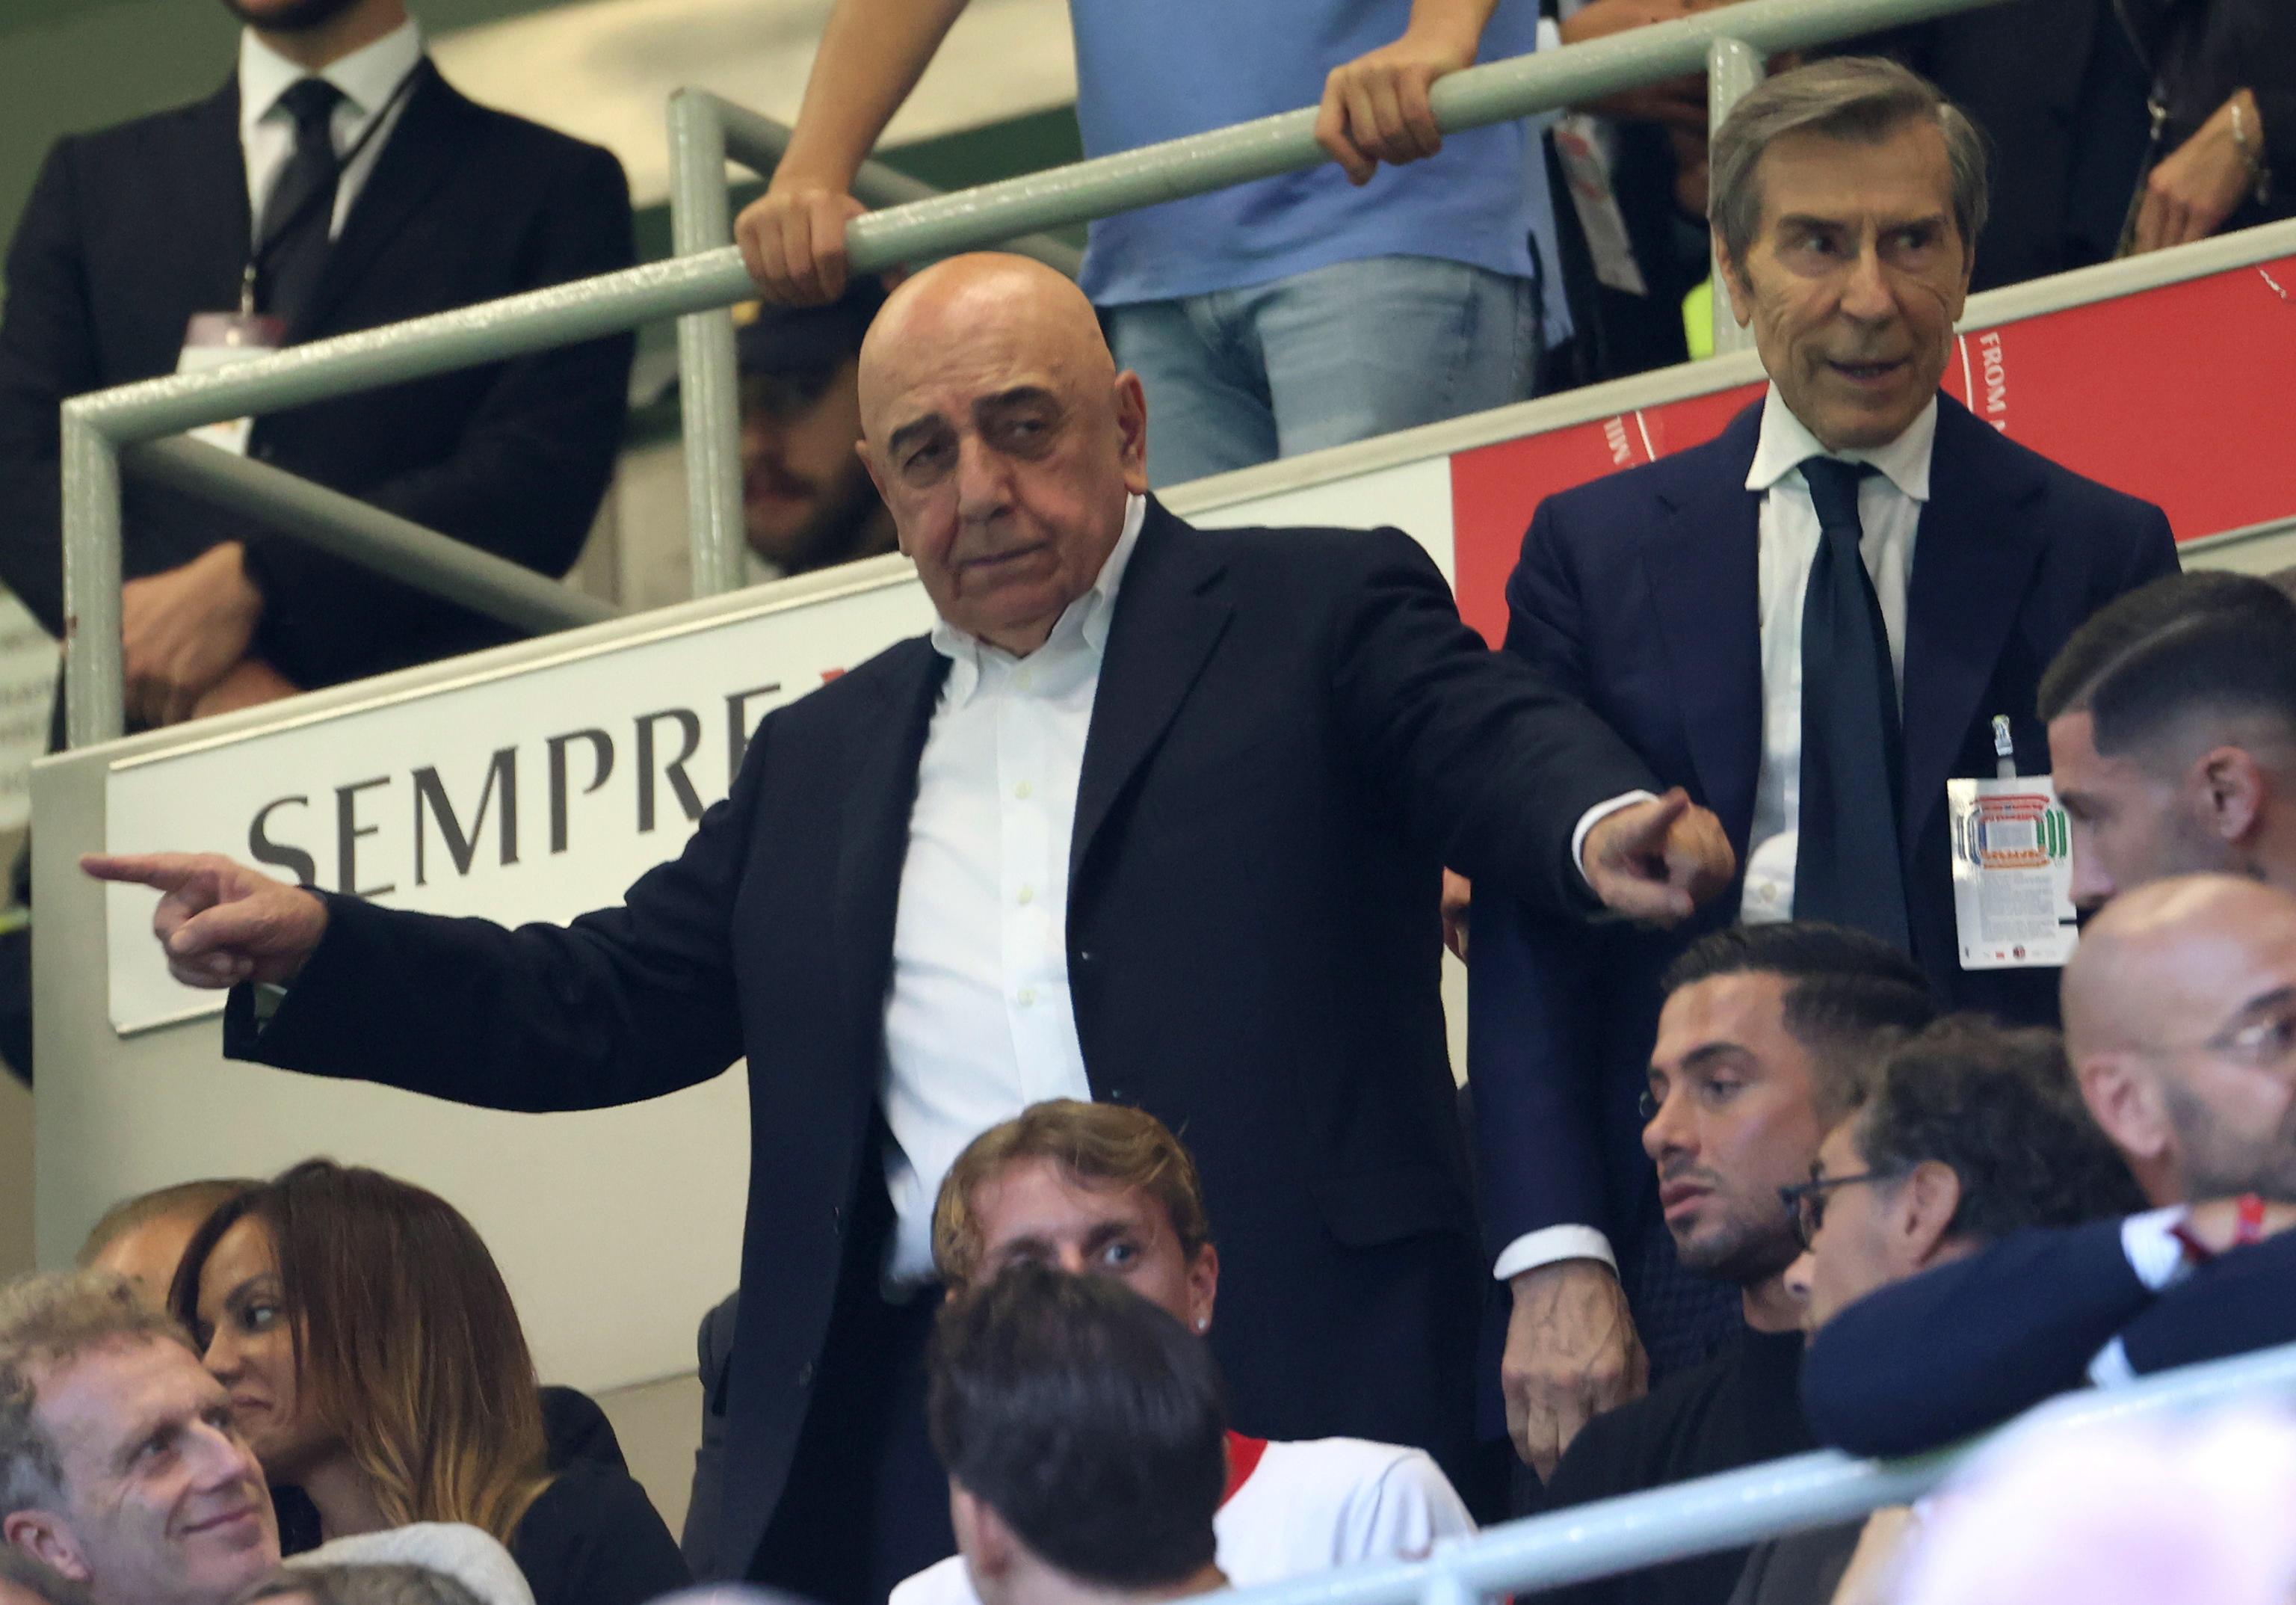 Equipo italiano deseó pronta recuperación al futbolista español apuñalado en Milán